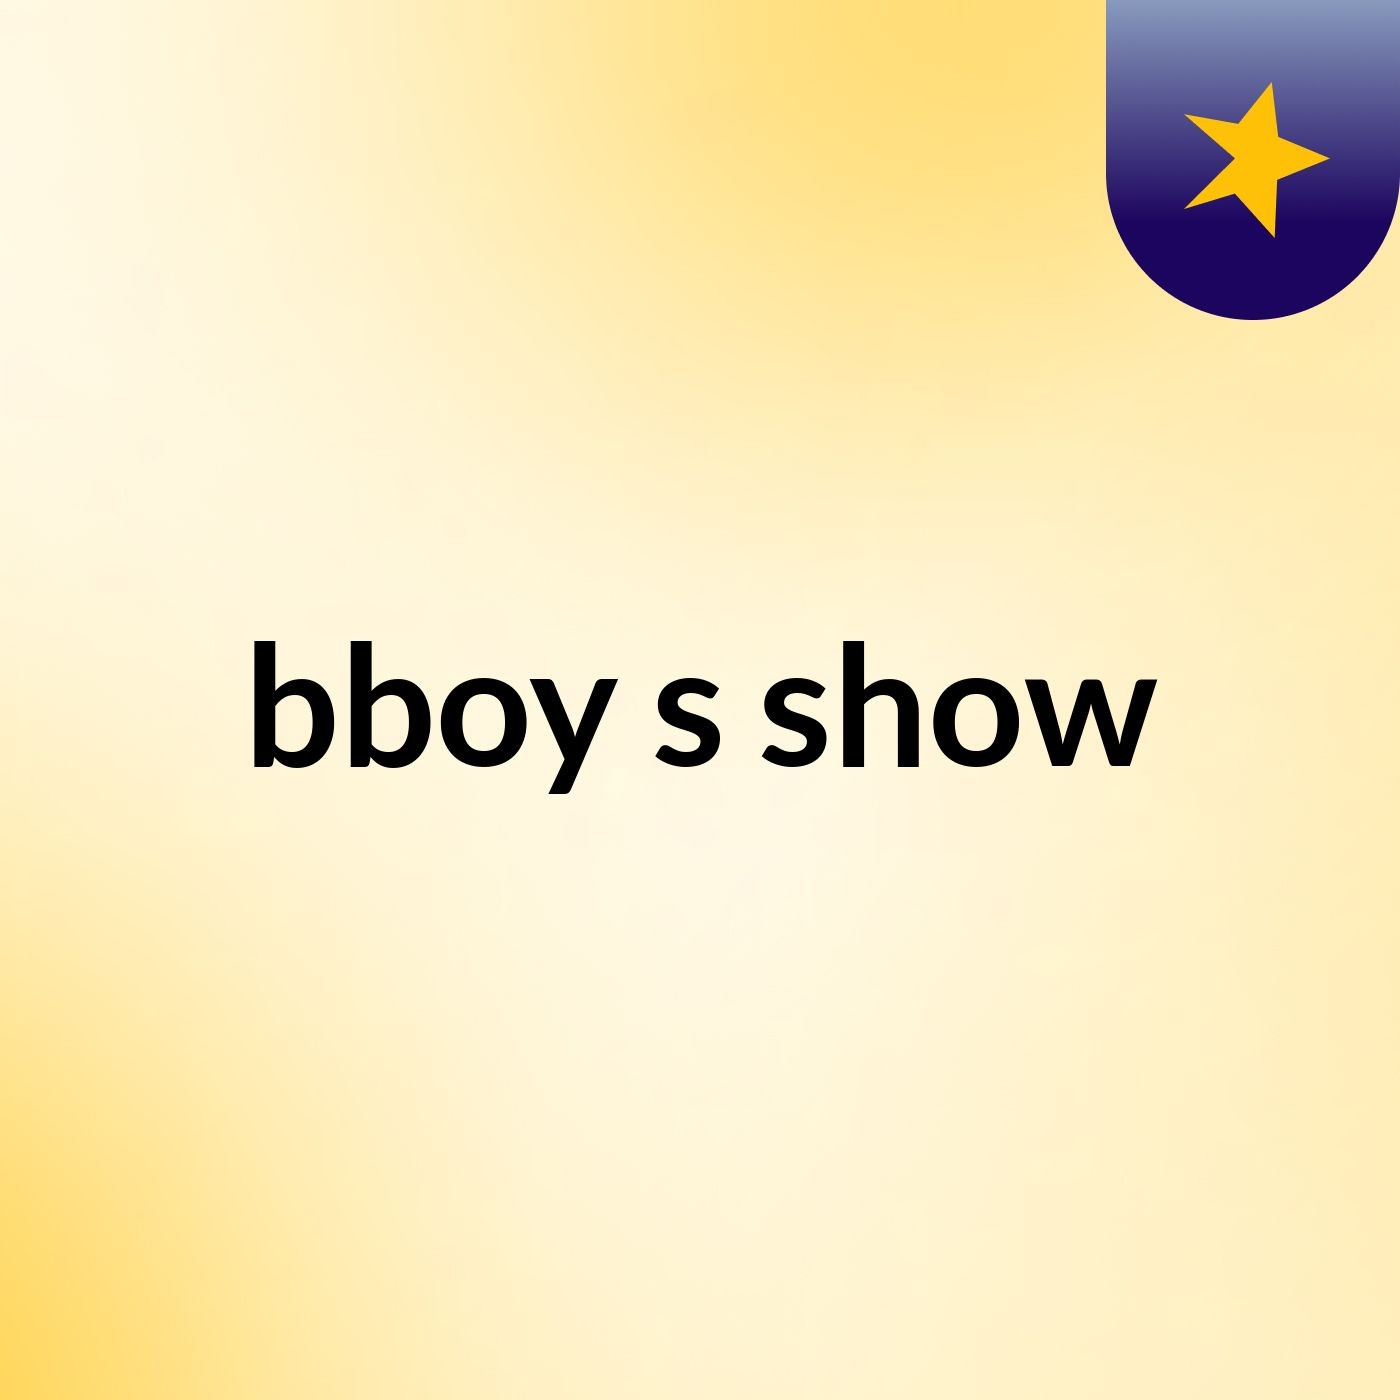 bboy's show